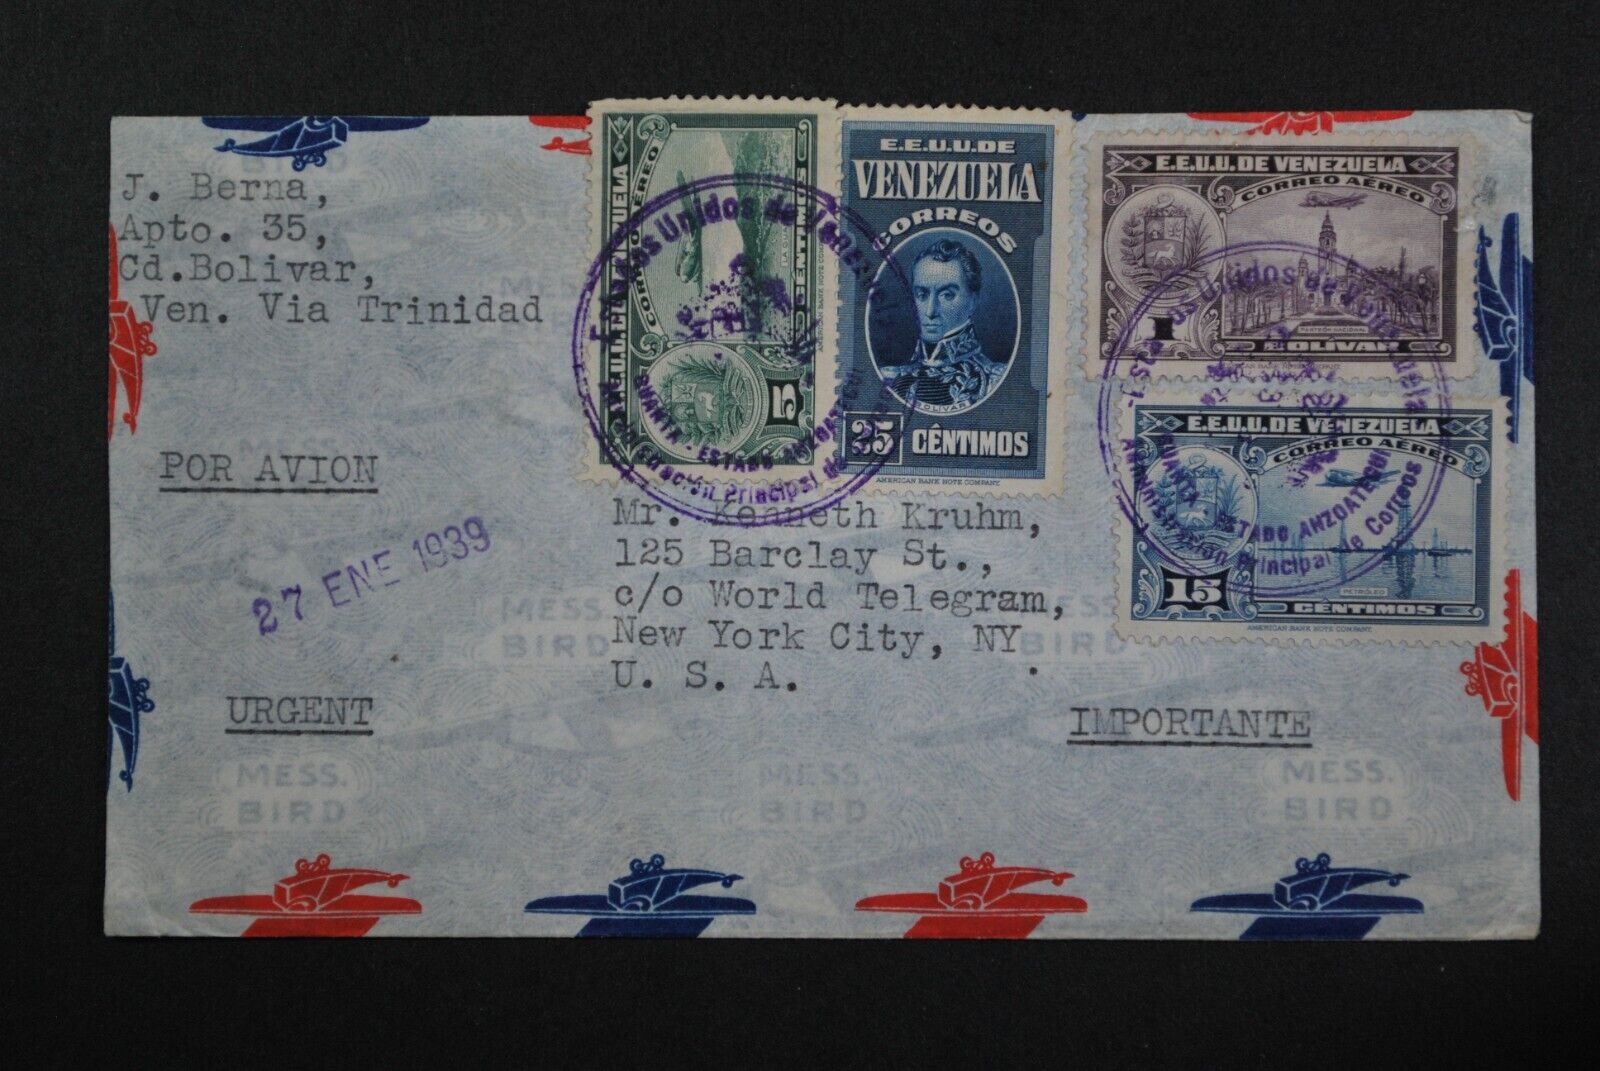 1939 Venezuela Airmail Cover "via Trinidad" To Usa